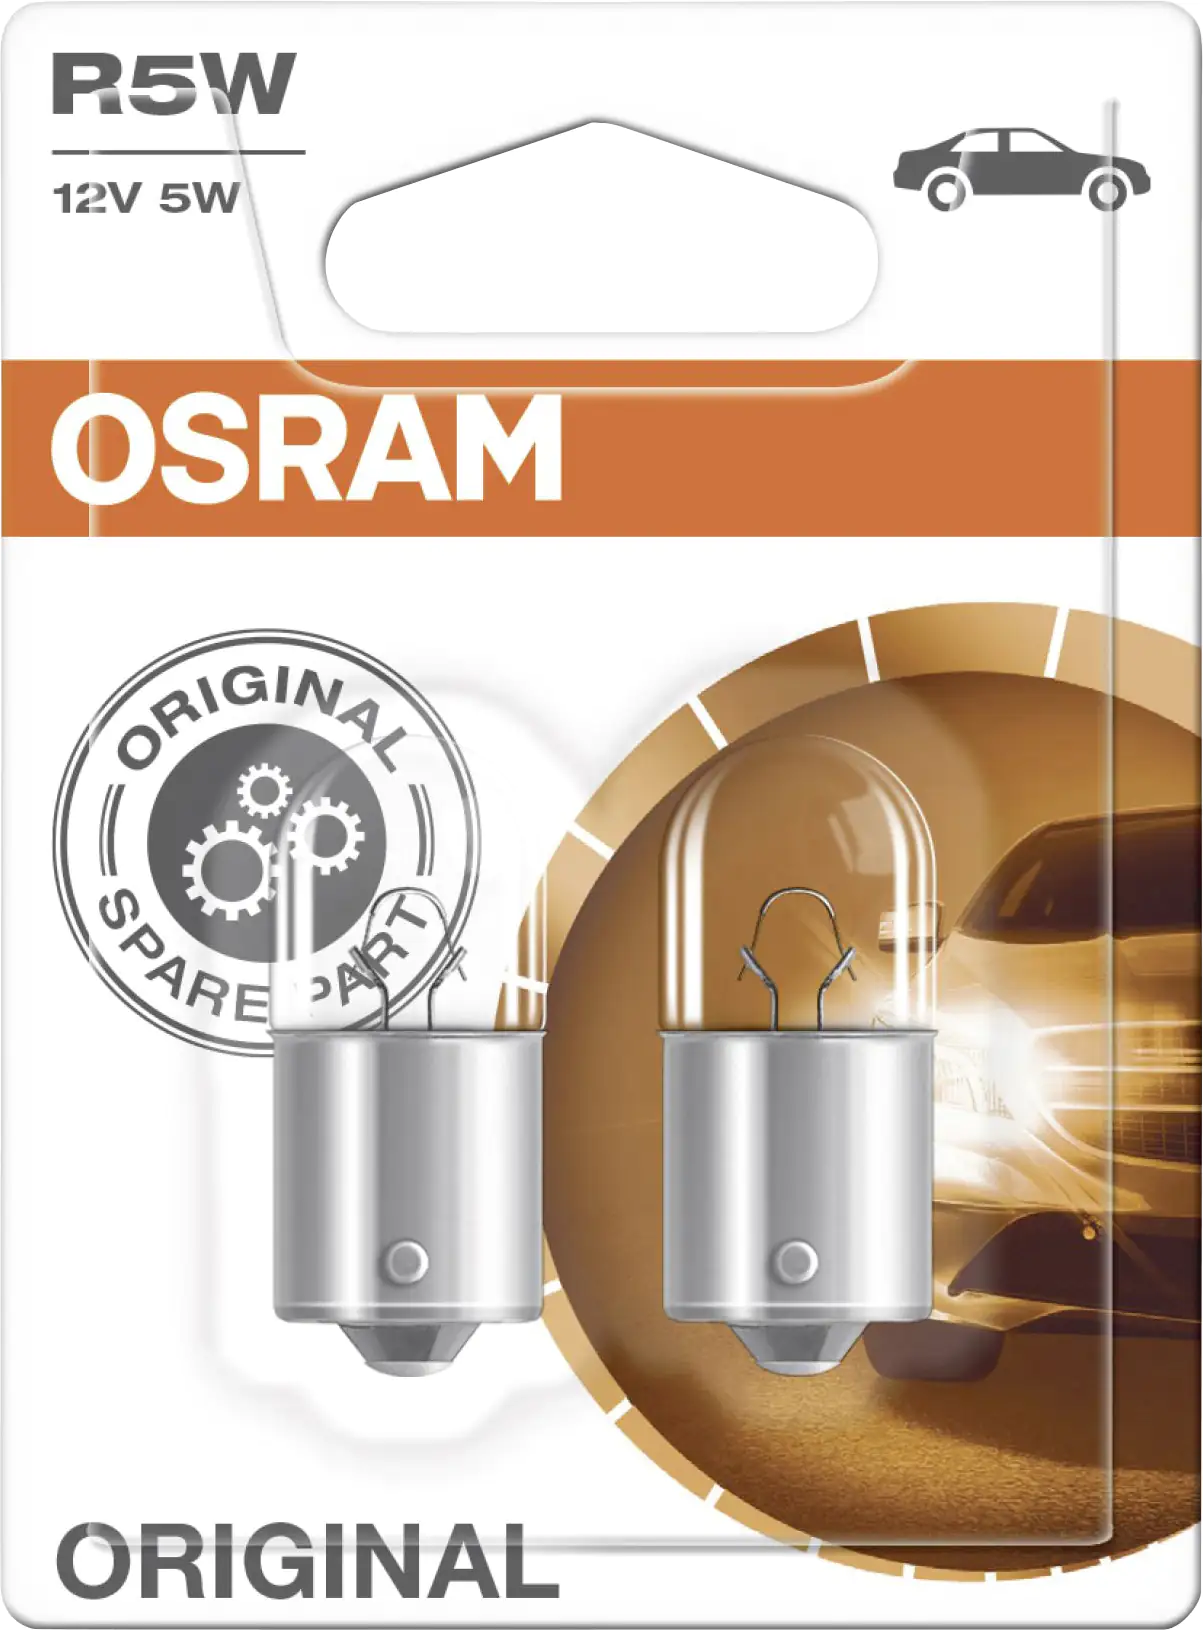 Osram Signallampe für Motorrad R5W 12V 5W kaufen